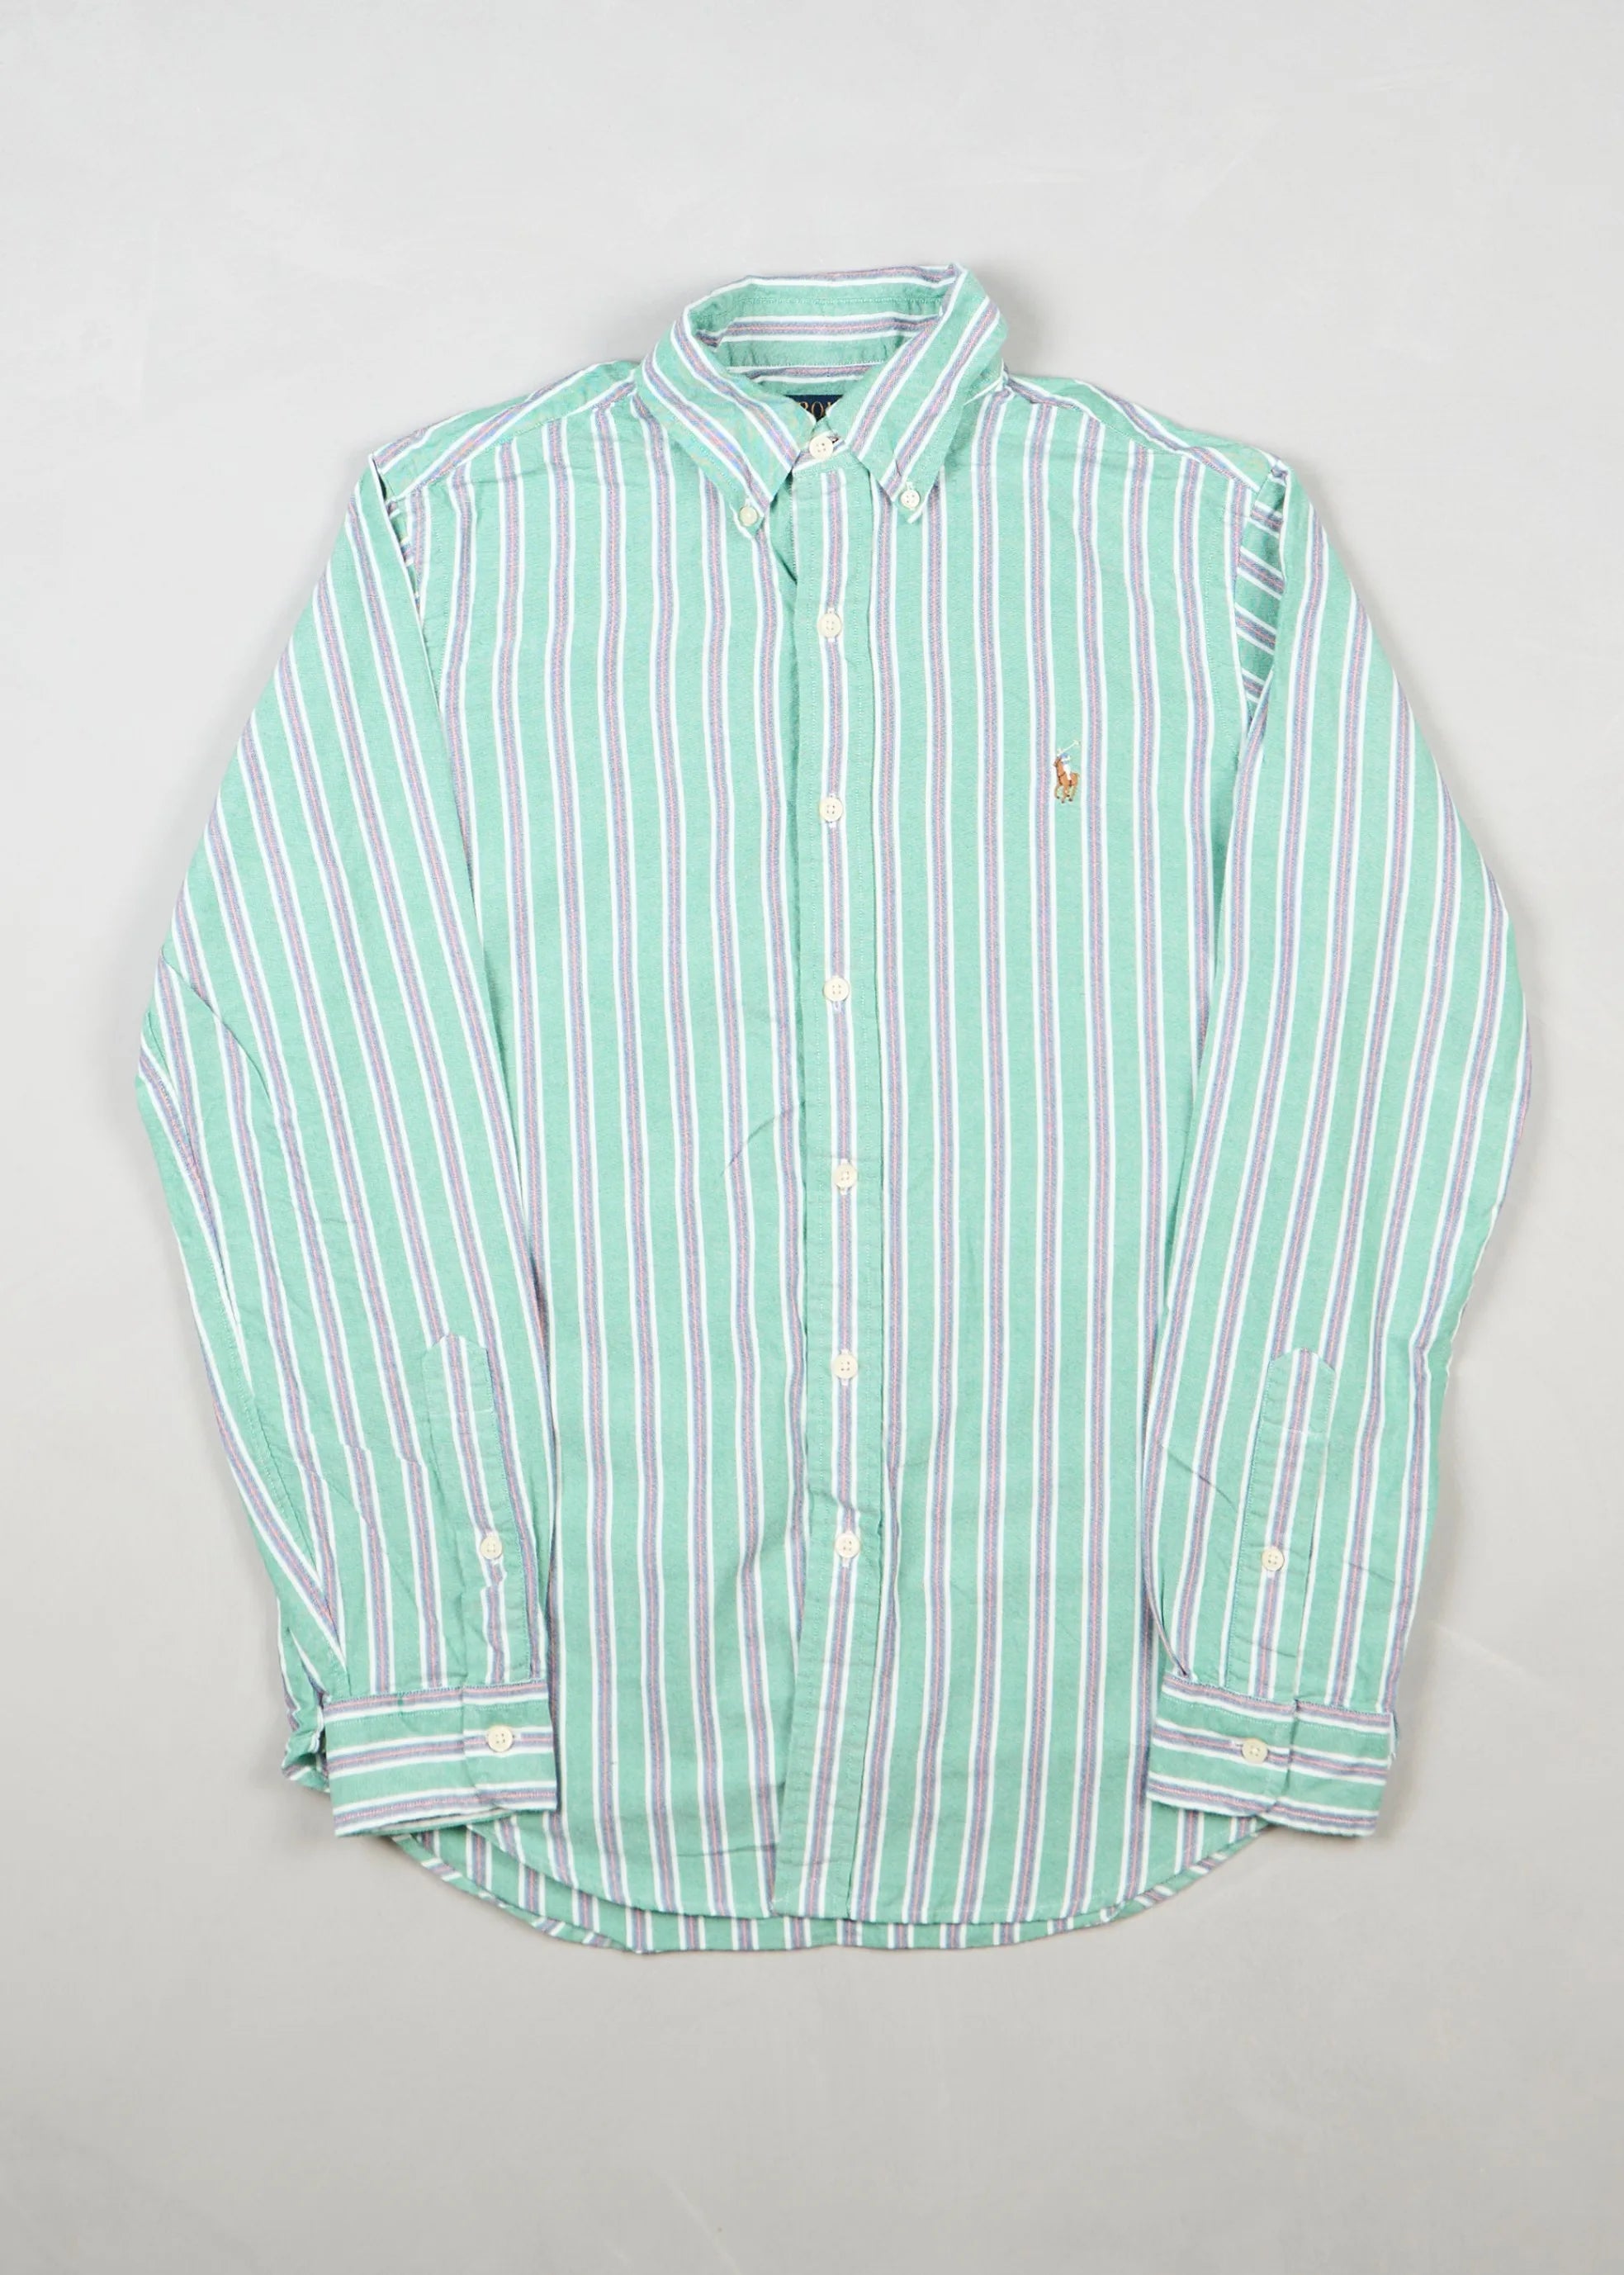 Ralph Lauren - Shirt ()